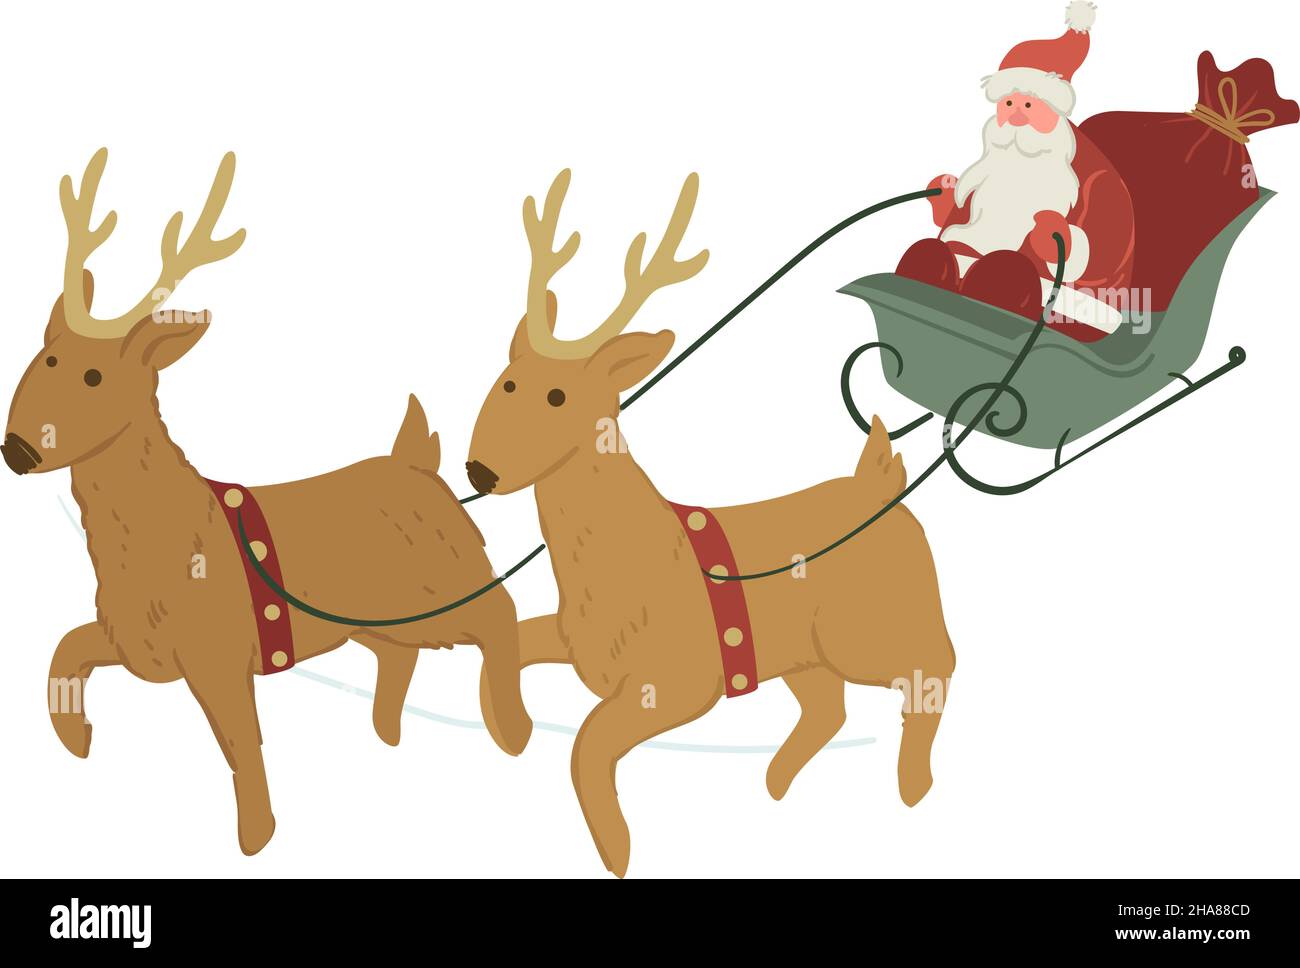 Noël et fête du nouvel an, le Père Noël isolé se pose sur des traîneaux en tête de rennes.Le personnage de Noël se précipite pour offrir des cadeaux et des cadeaux Illustration de Vecteur